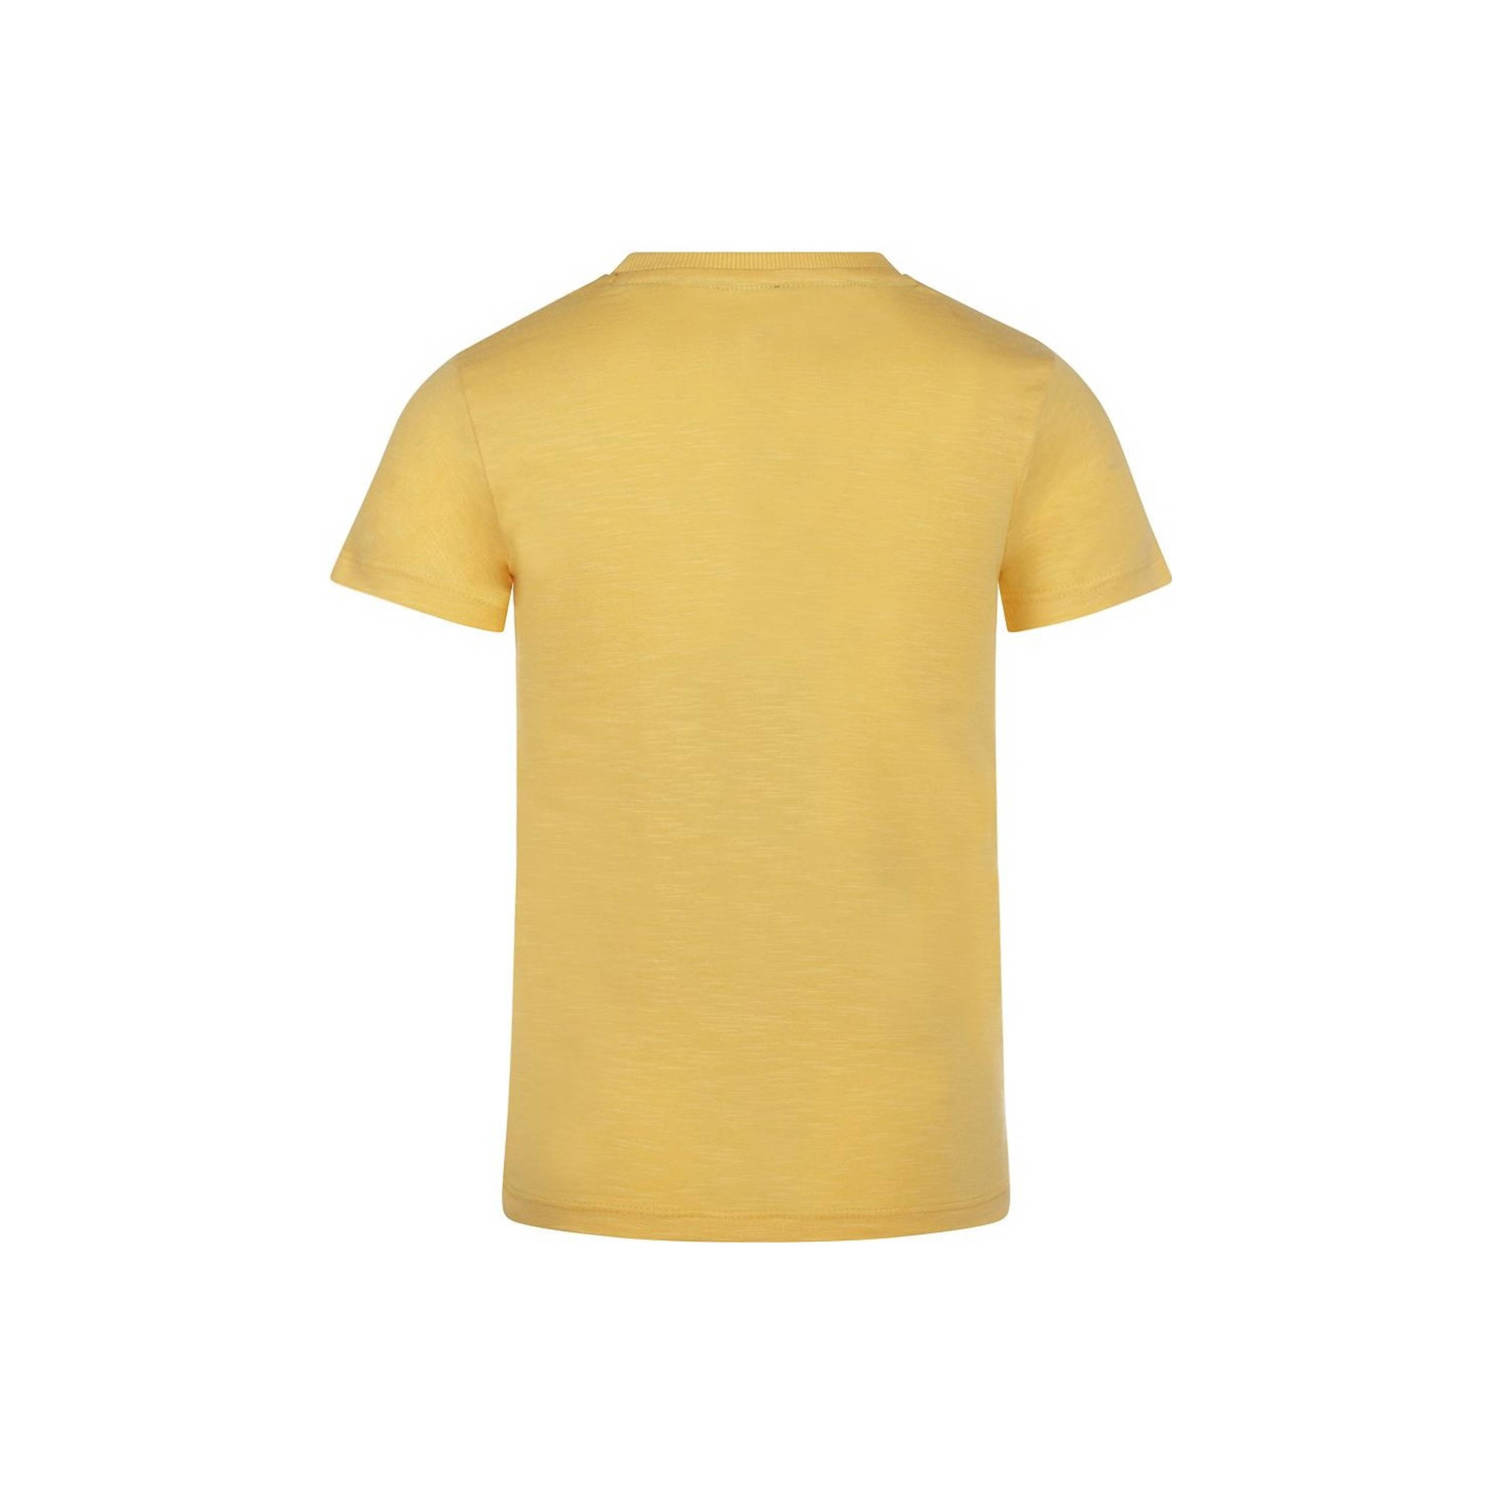 Koko Noko T-shirt met printopdruk geel